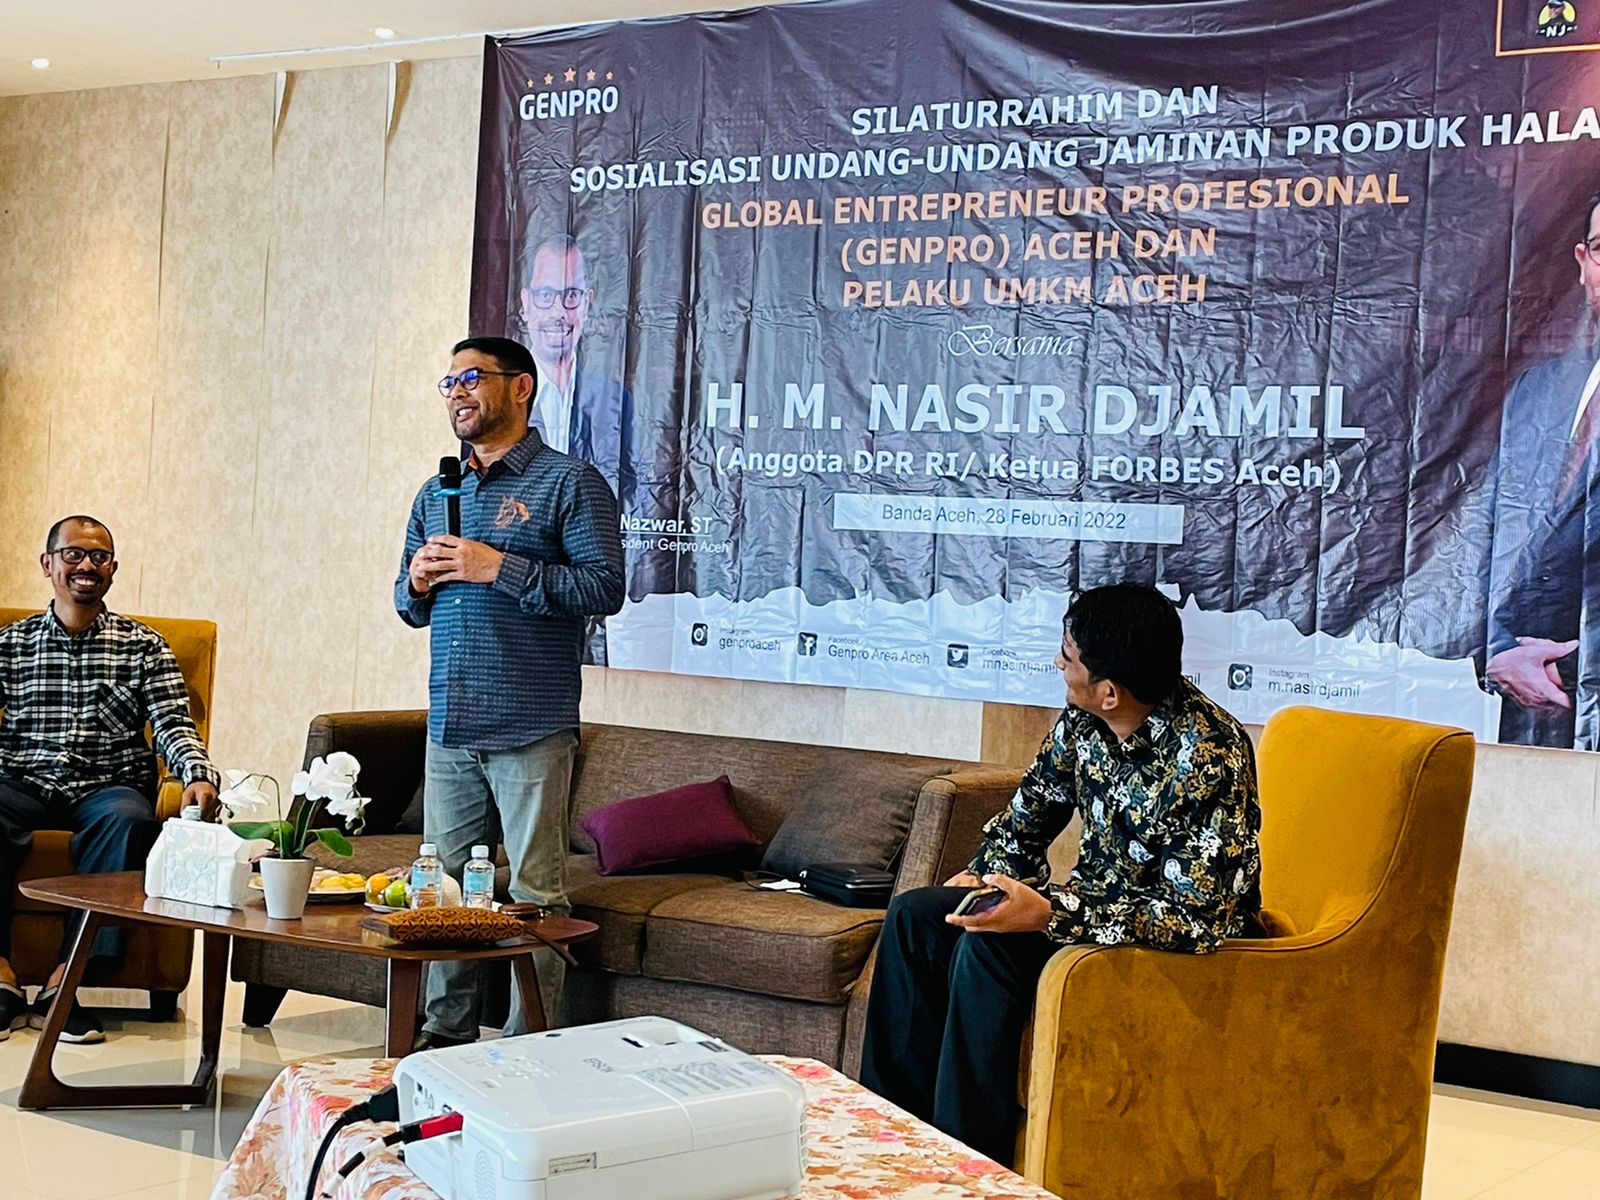 Sosialisasi Undang-Undang Jaminan Produk Halal di Aceh, Nasir Djamil Gandeng GENPRO Aceh Ajak Pengusaha Peduli Produk Halal